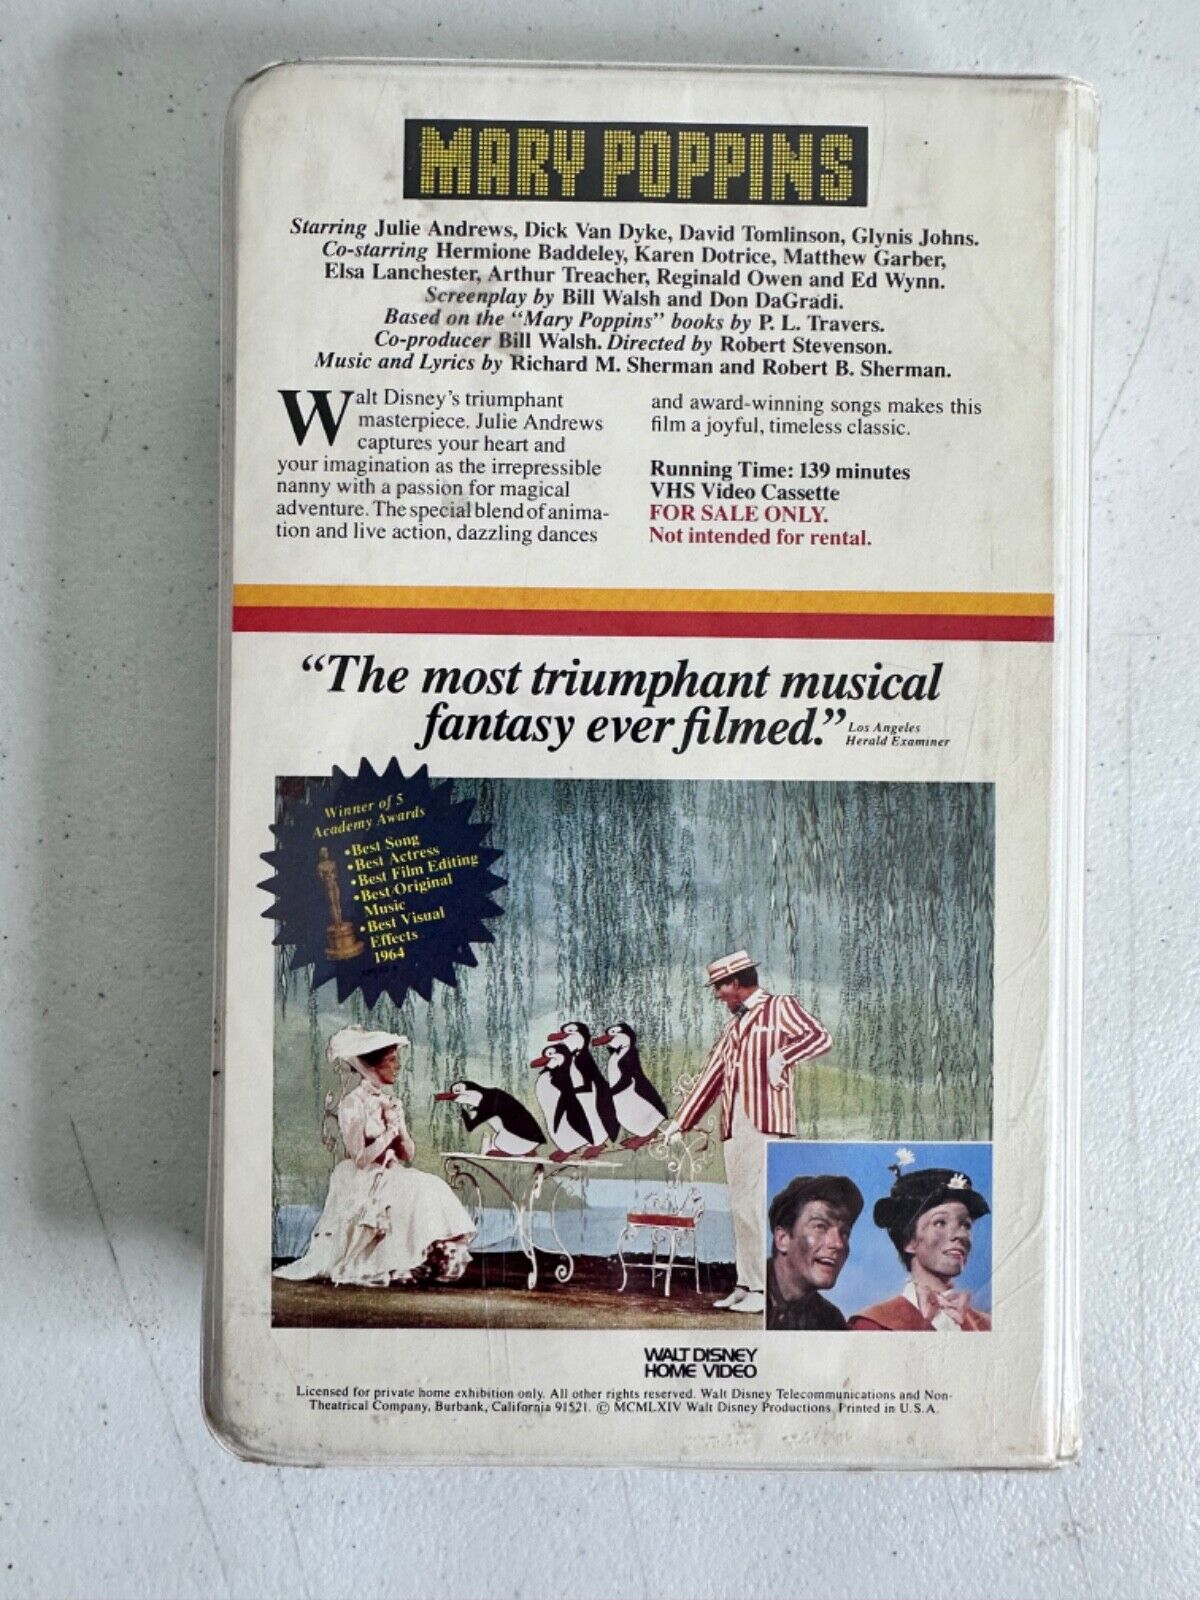 Rare 1980s Mary Poppins Original VHS - Walt Disney Home Video - Collectors Item - TreasuTiques